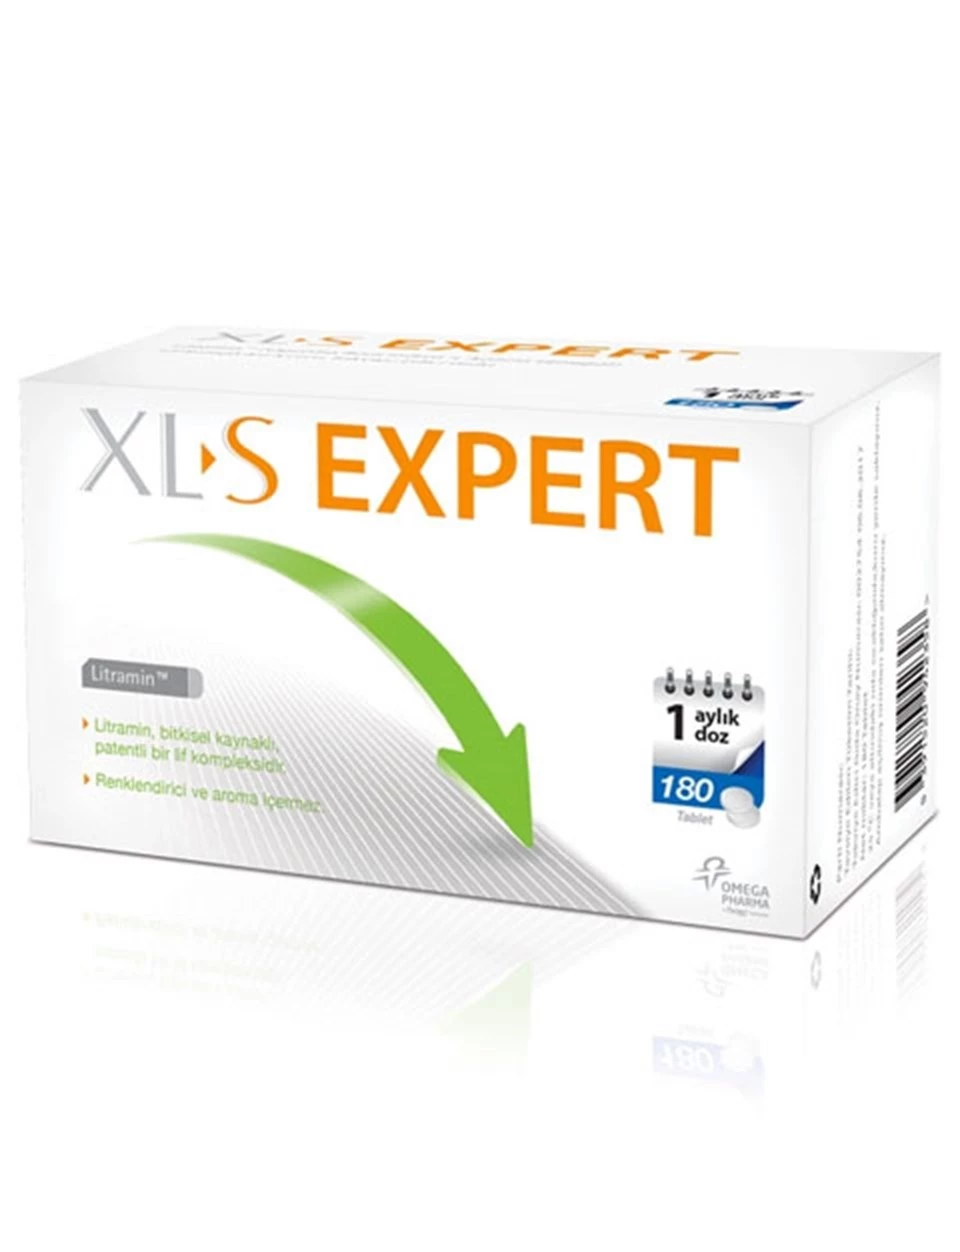 XL-S Expert Takviye Edici Gıda 180 Tablet